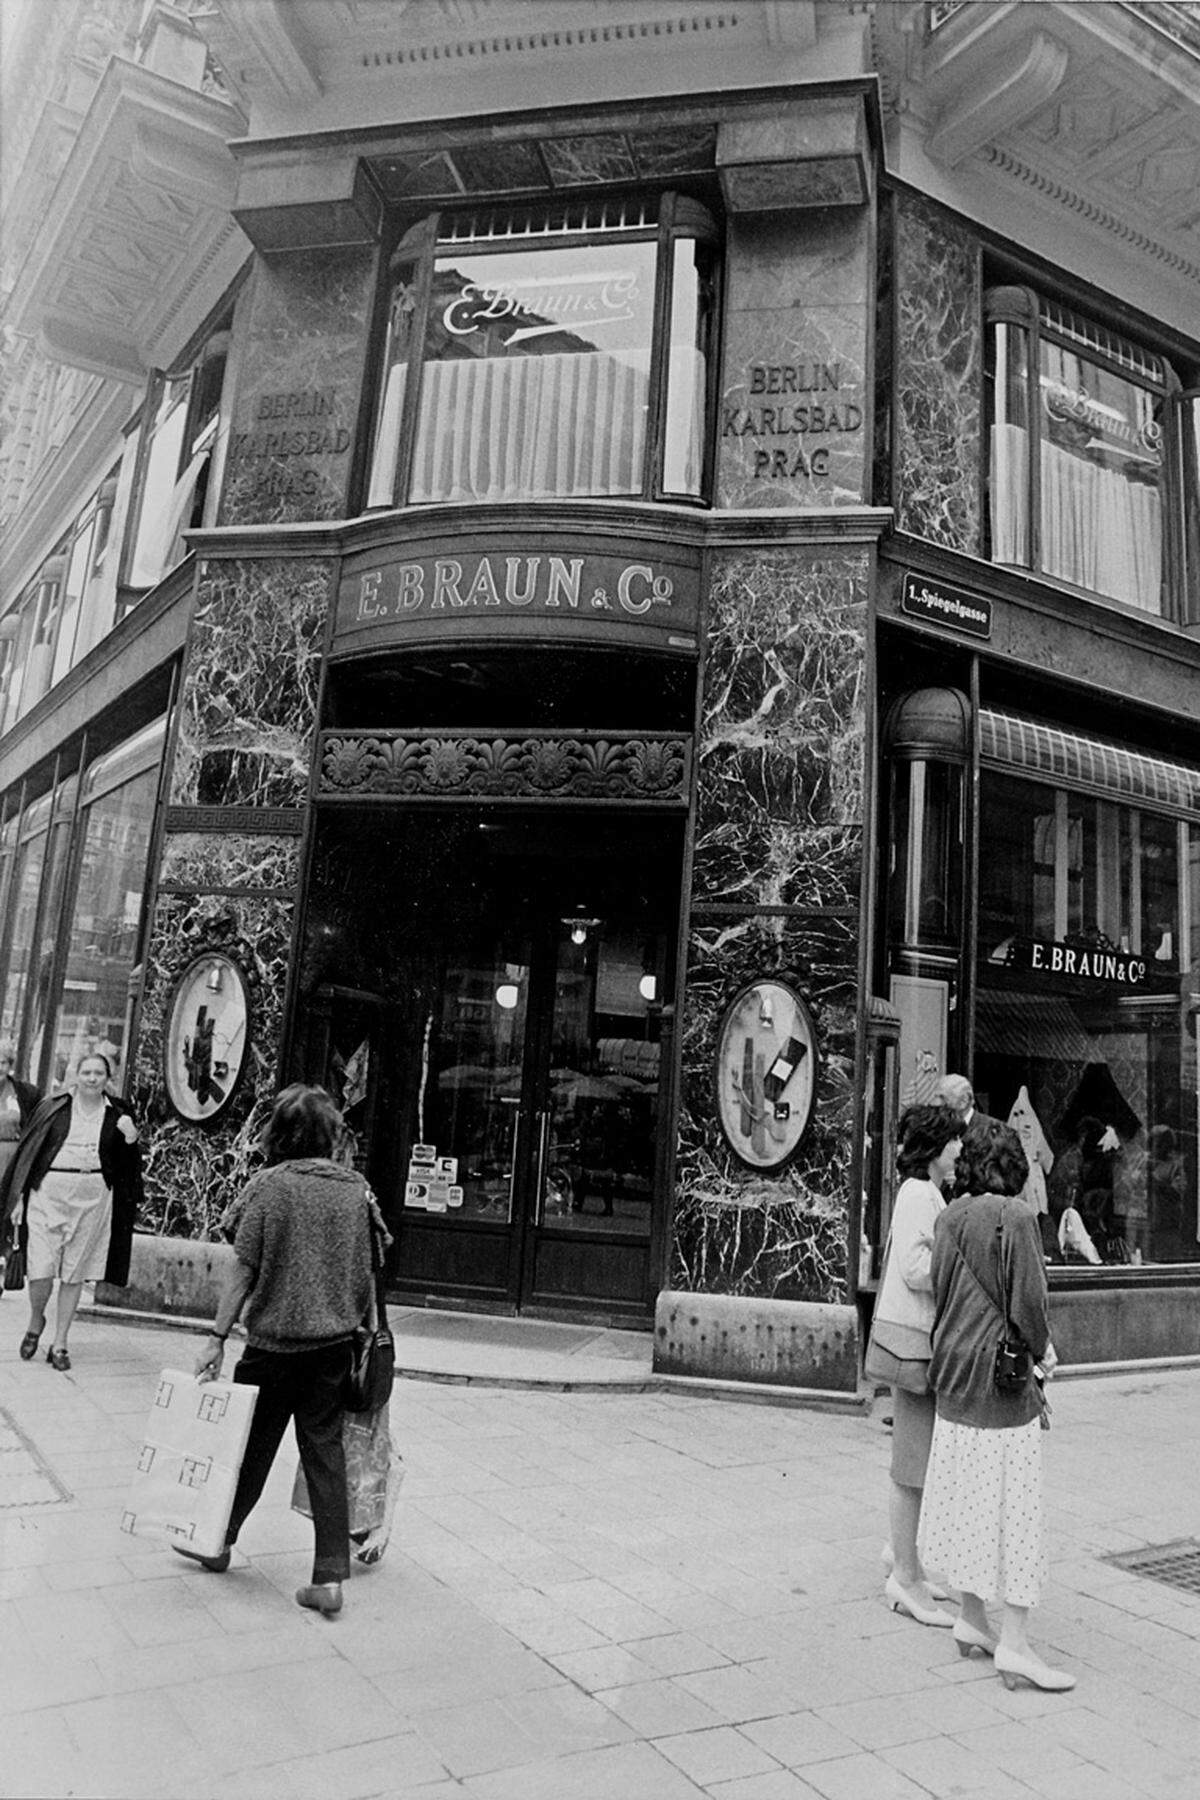 Das Modebusiness hat sich seit den späten Siebzigern von Grund auf geändert. Viele Maisons, die heute in aller Munde sind, gab es damals noch gar nicht, und wenn doch, waren sie nicht Teil weltumspannender Konzerne. Eine entsprechend wichtige Rolle spielten lokale Händler, die Kollektionen für ihre Boutiquen und Warenhäuser importierten – die Ära der markeneigenen Flagship-Stores sollte erst später kommen. In Wien kaufte man vielleicht bei Braun &amp; Co. am Graben ein, oder beim Kaufhaus Steffl auf der Kärntner Straße, ließ sich einen Anzug bei Knize machen oder schaute auf der Suche nach extravaganten Objekten in der Section N der Noevers vorbei. Erstaunlich übrigens, wie spät die großen Modemarken mit eigenen Stores nach Wien kamen, dann aber auf einen Schlag: Versace 1997, Gucci und Louis Vuitton 1998, Prada ebenfalls erst Ende der 1990er, Chanel 2000, Hermès 2001, Giorgio Armani 2002 und Dolce &amp; Gabbana 2002. Bleibt nur zu sagen: Besser spät als nie . . .